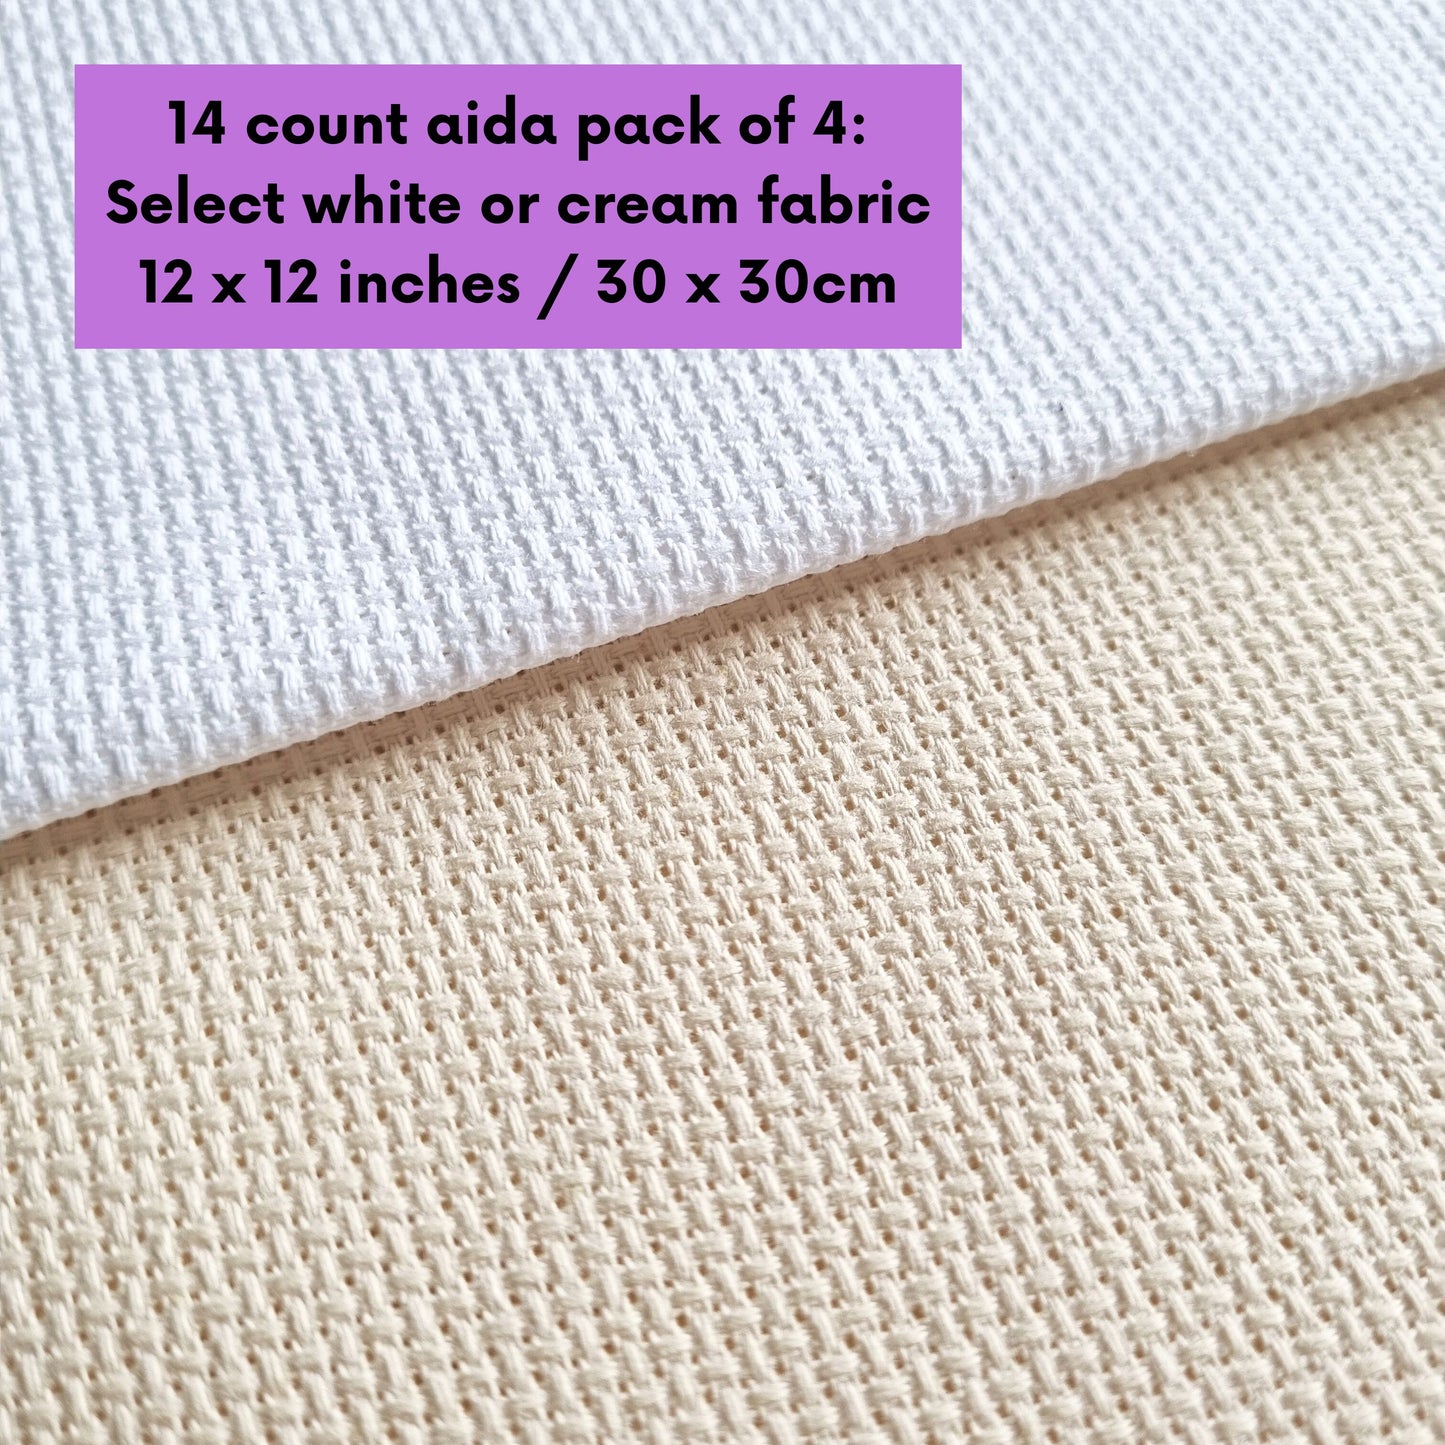 4 Pieces of 14 Count White or Cream Aida Fabric 12 x 12 Inches / 30cm x 30cm